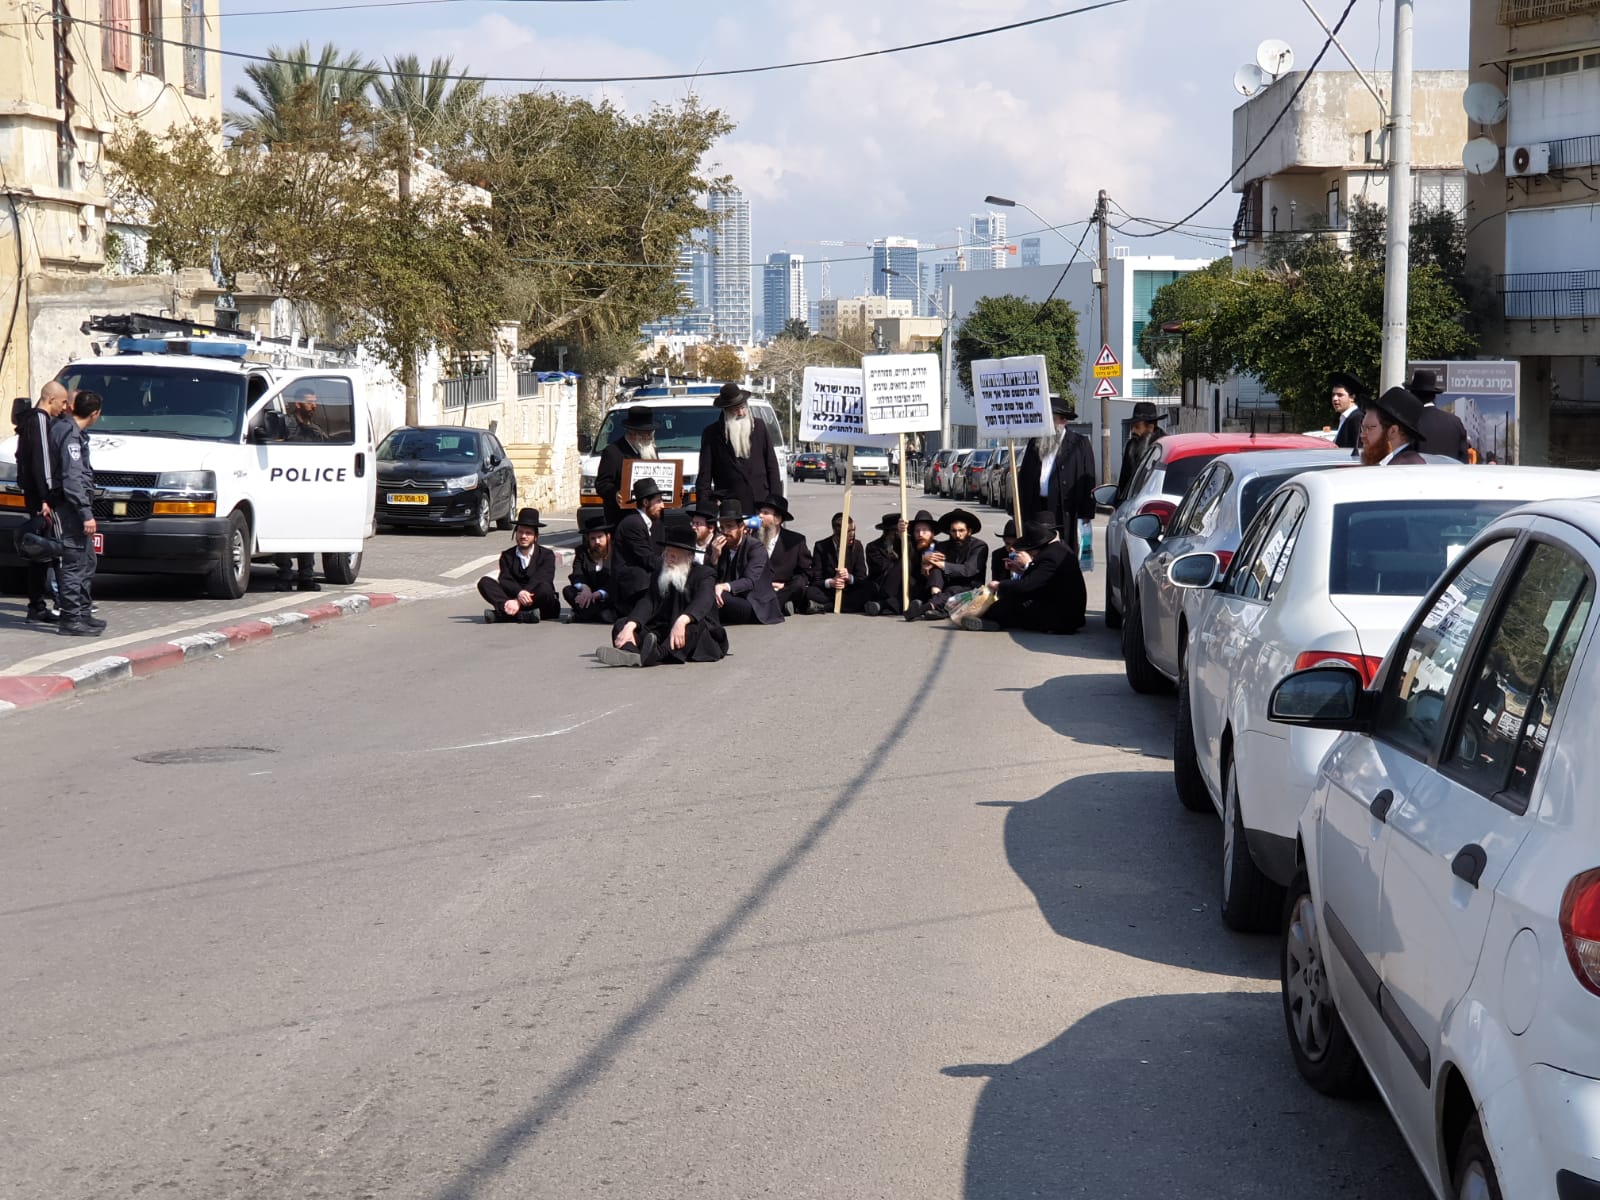  فيديو: الخارديم يغلقون شارع شيفتي يسرائيل بيافا والشرطة تعيد فتحه أمام حركة السير